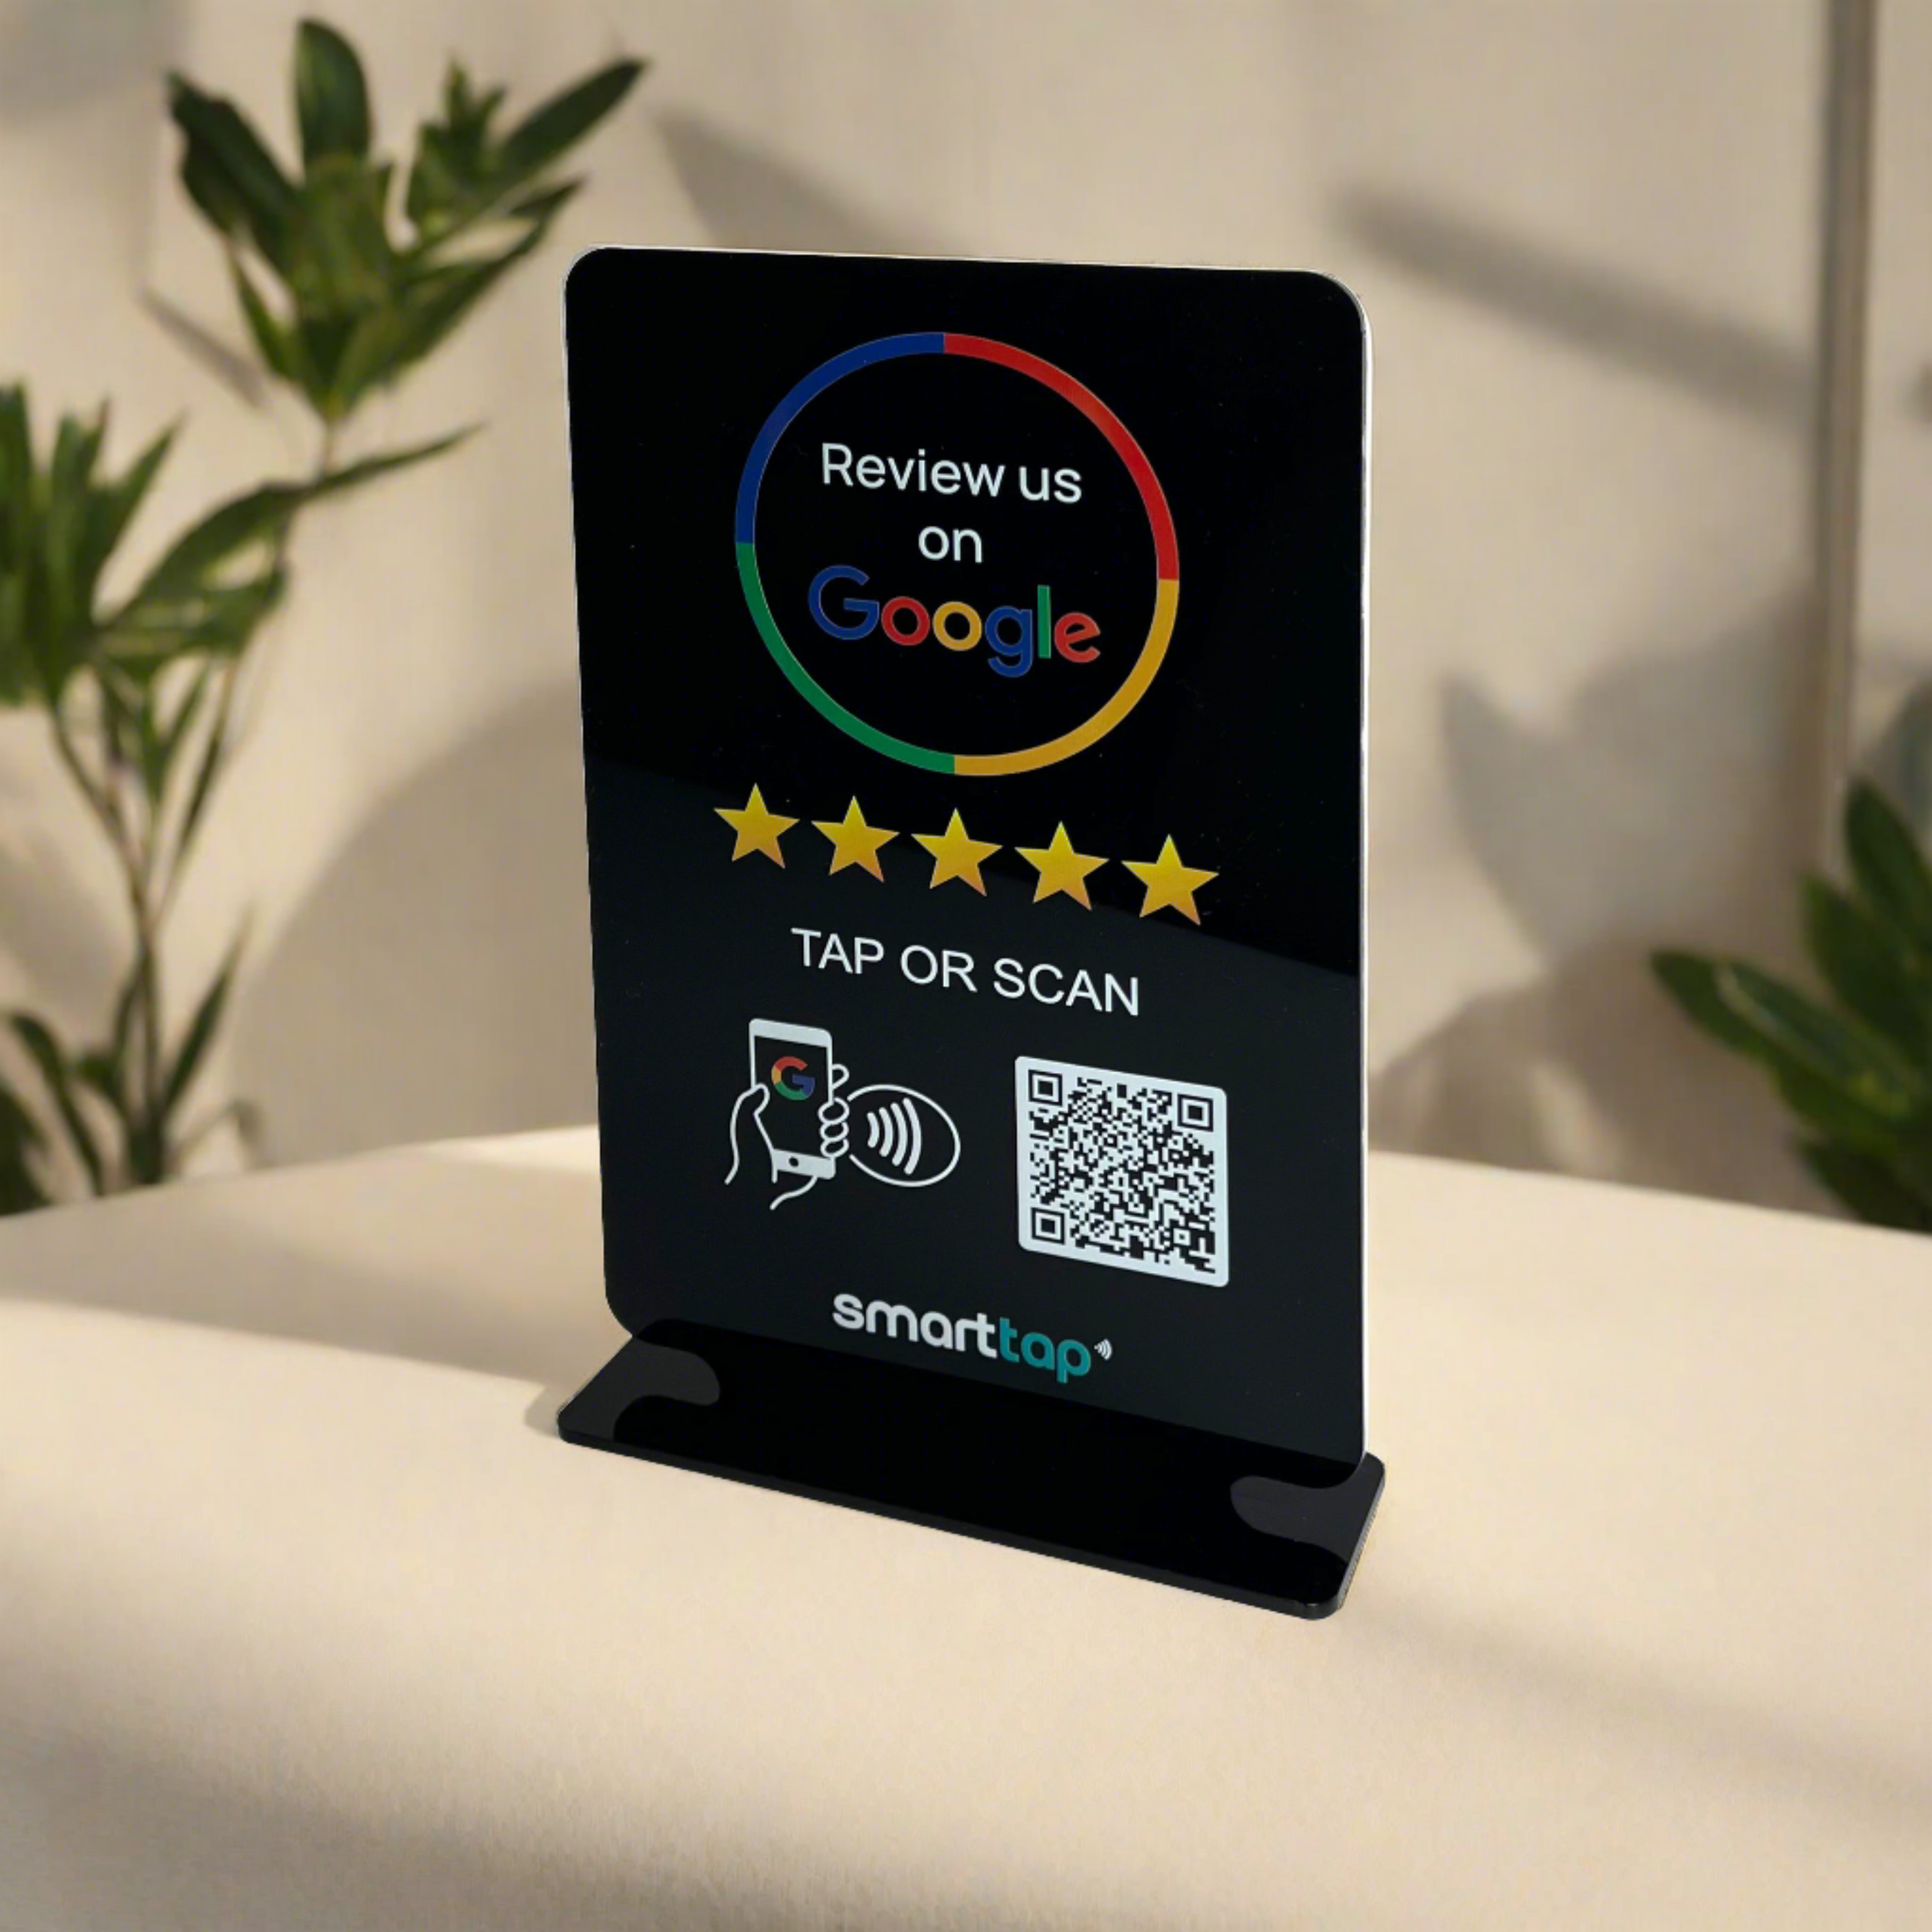 Smart-Tap, Google Review Table Talker T-Shape χωρίς το λογότυπο σας. Μεγάλο μαύρο